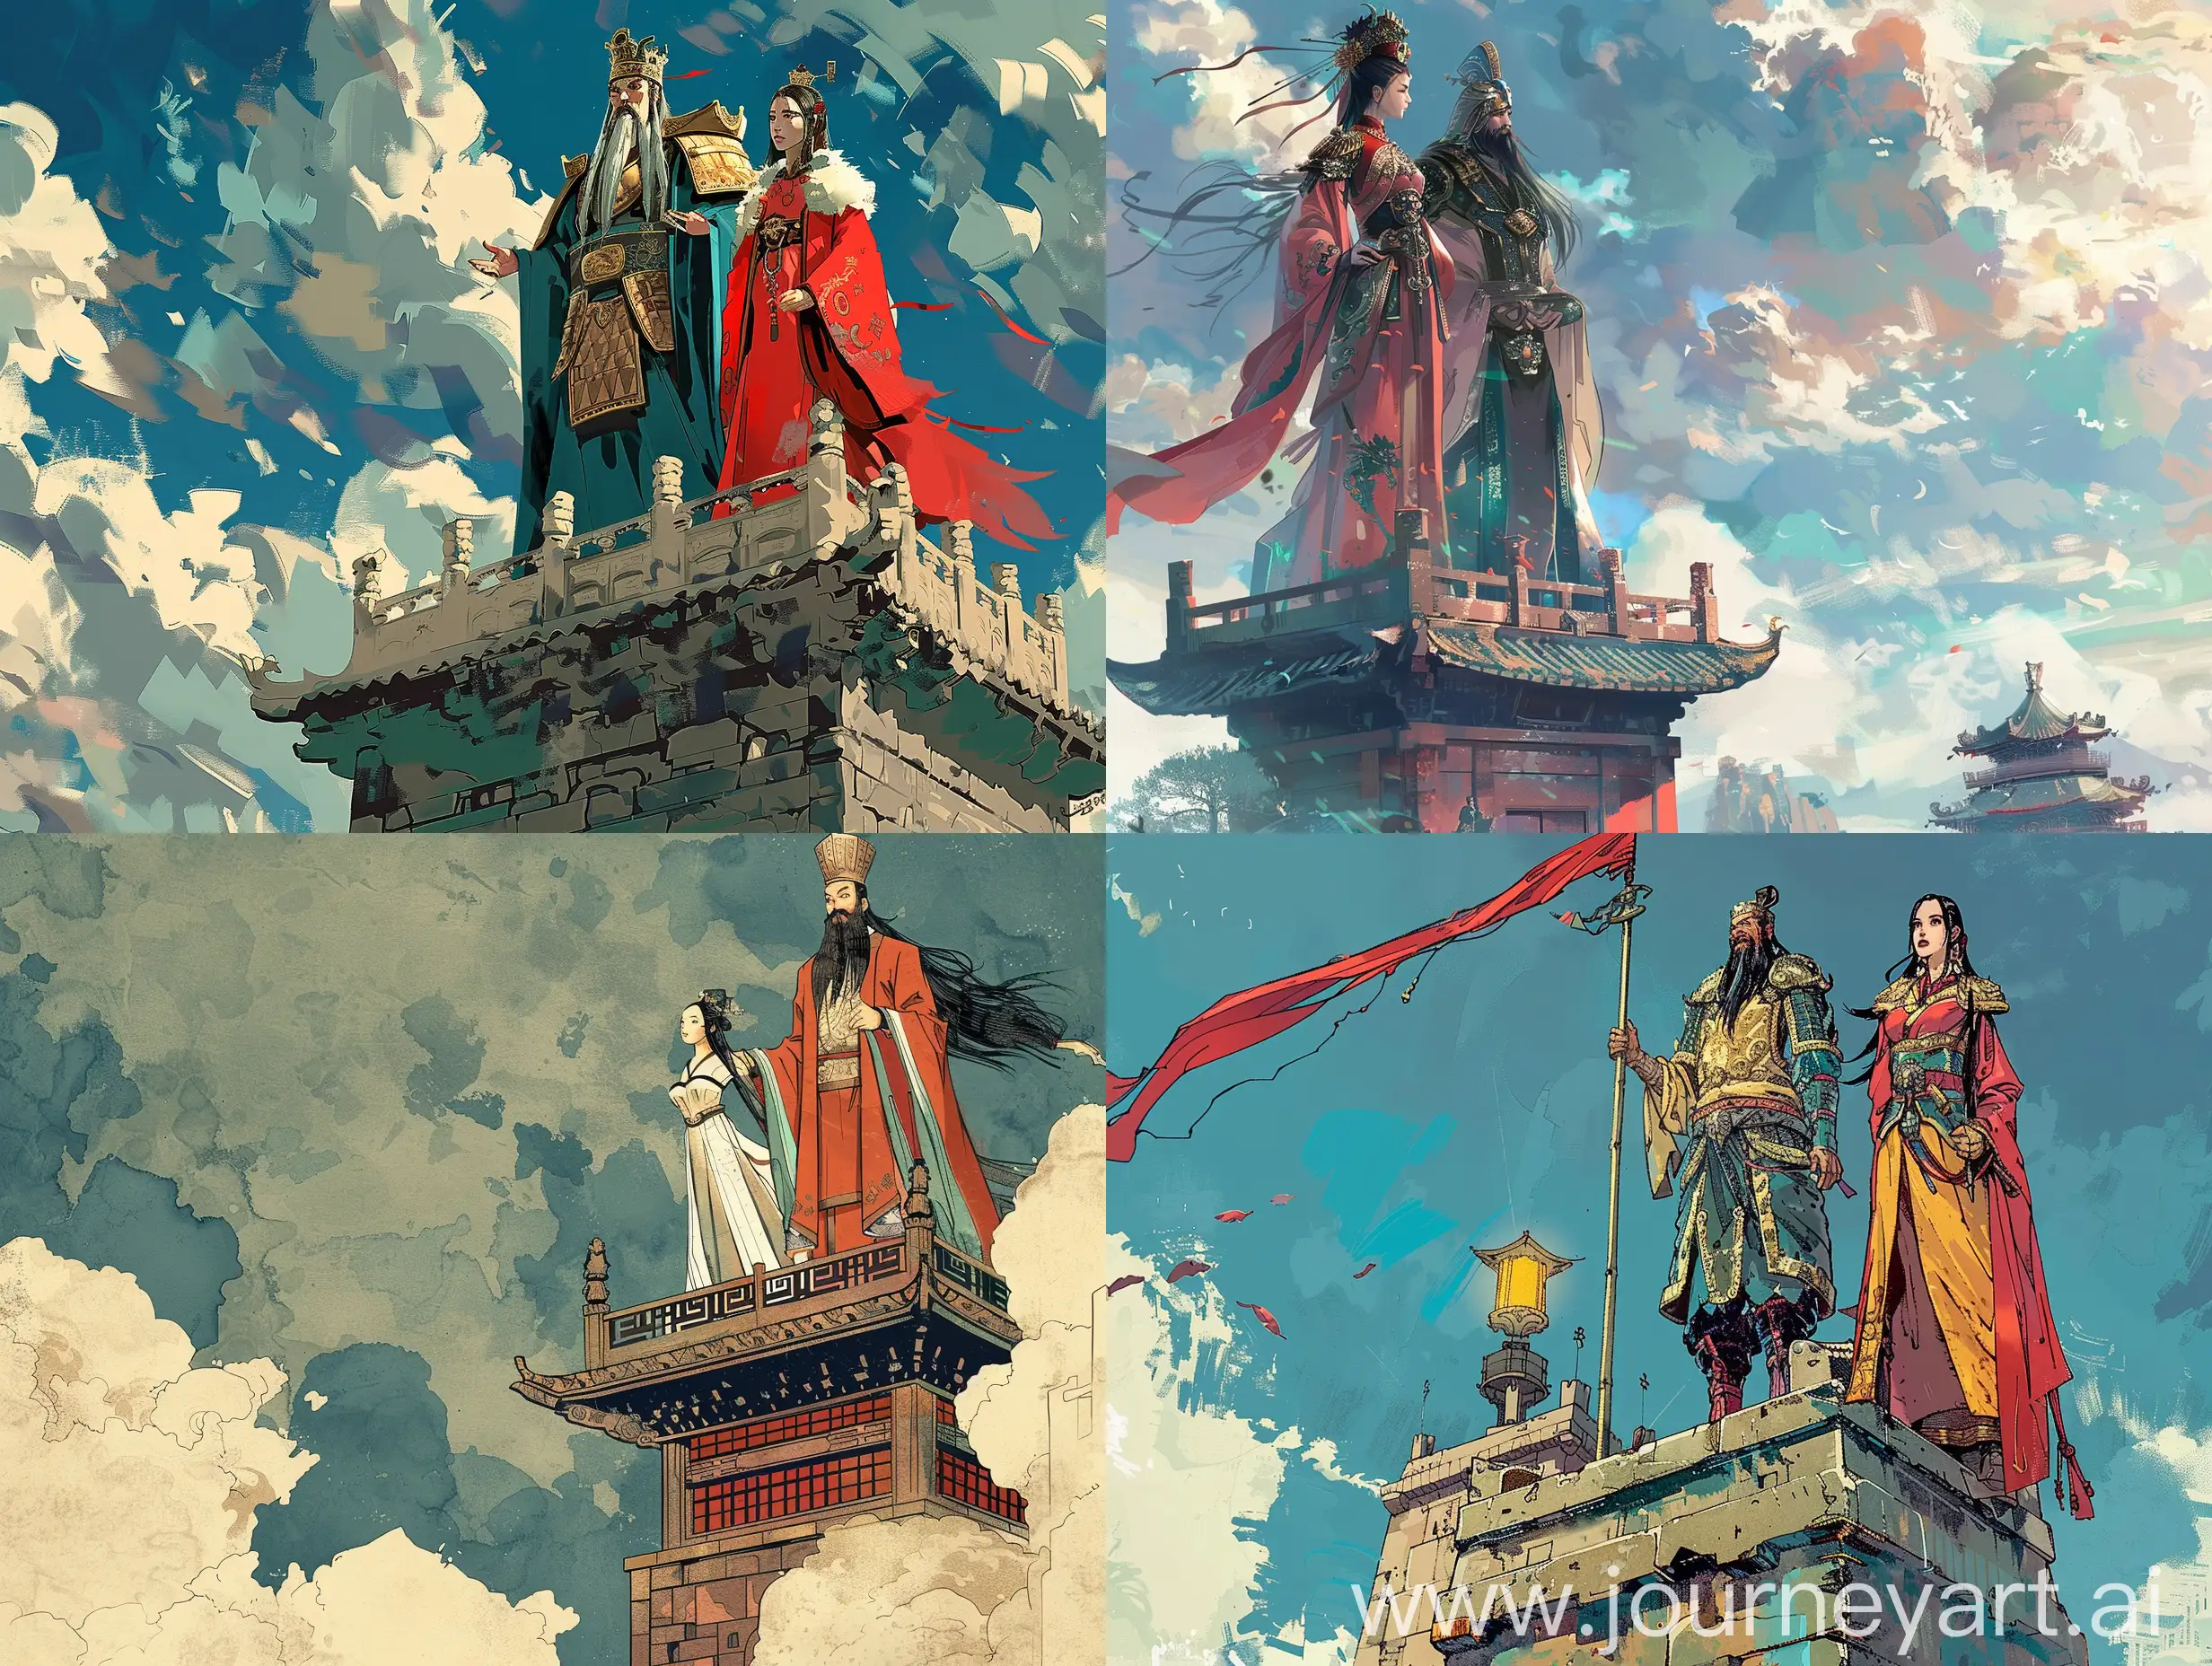 一个国王和一个美女站在烽火台上，中国风漫画风格，水墨画镜头，东方美学，二次元，大师之作，场面宏大，4k高清。
